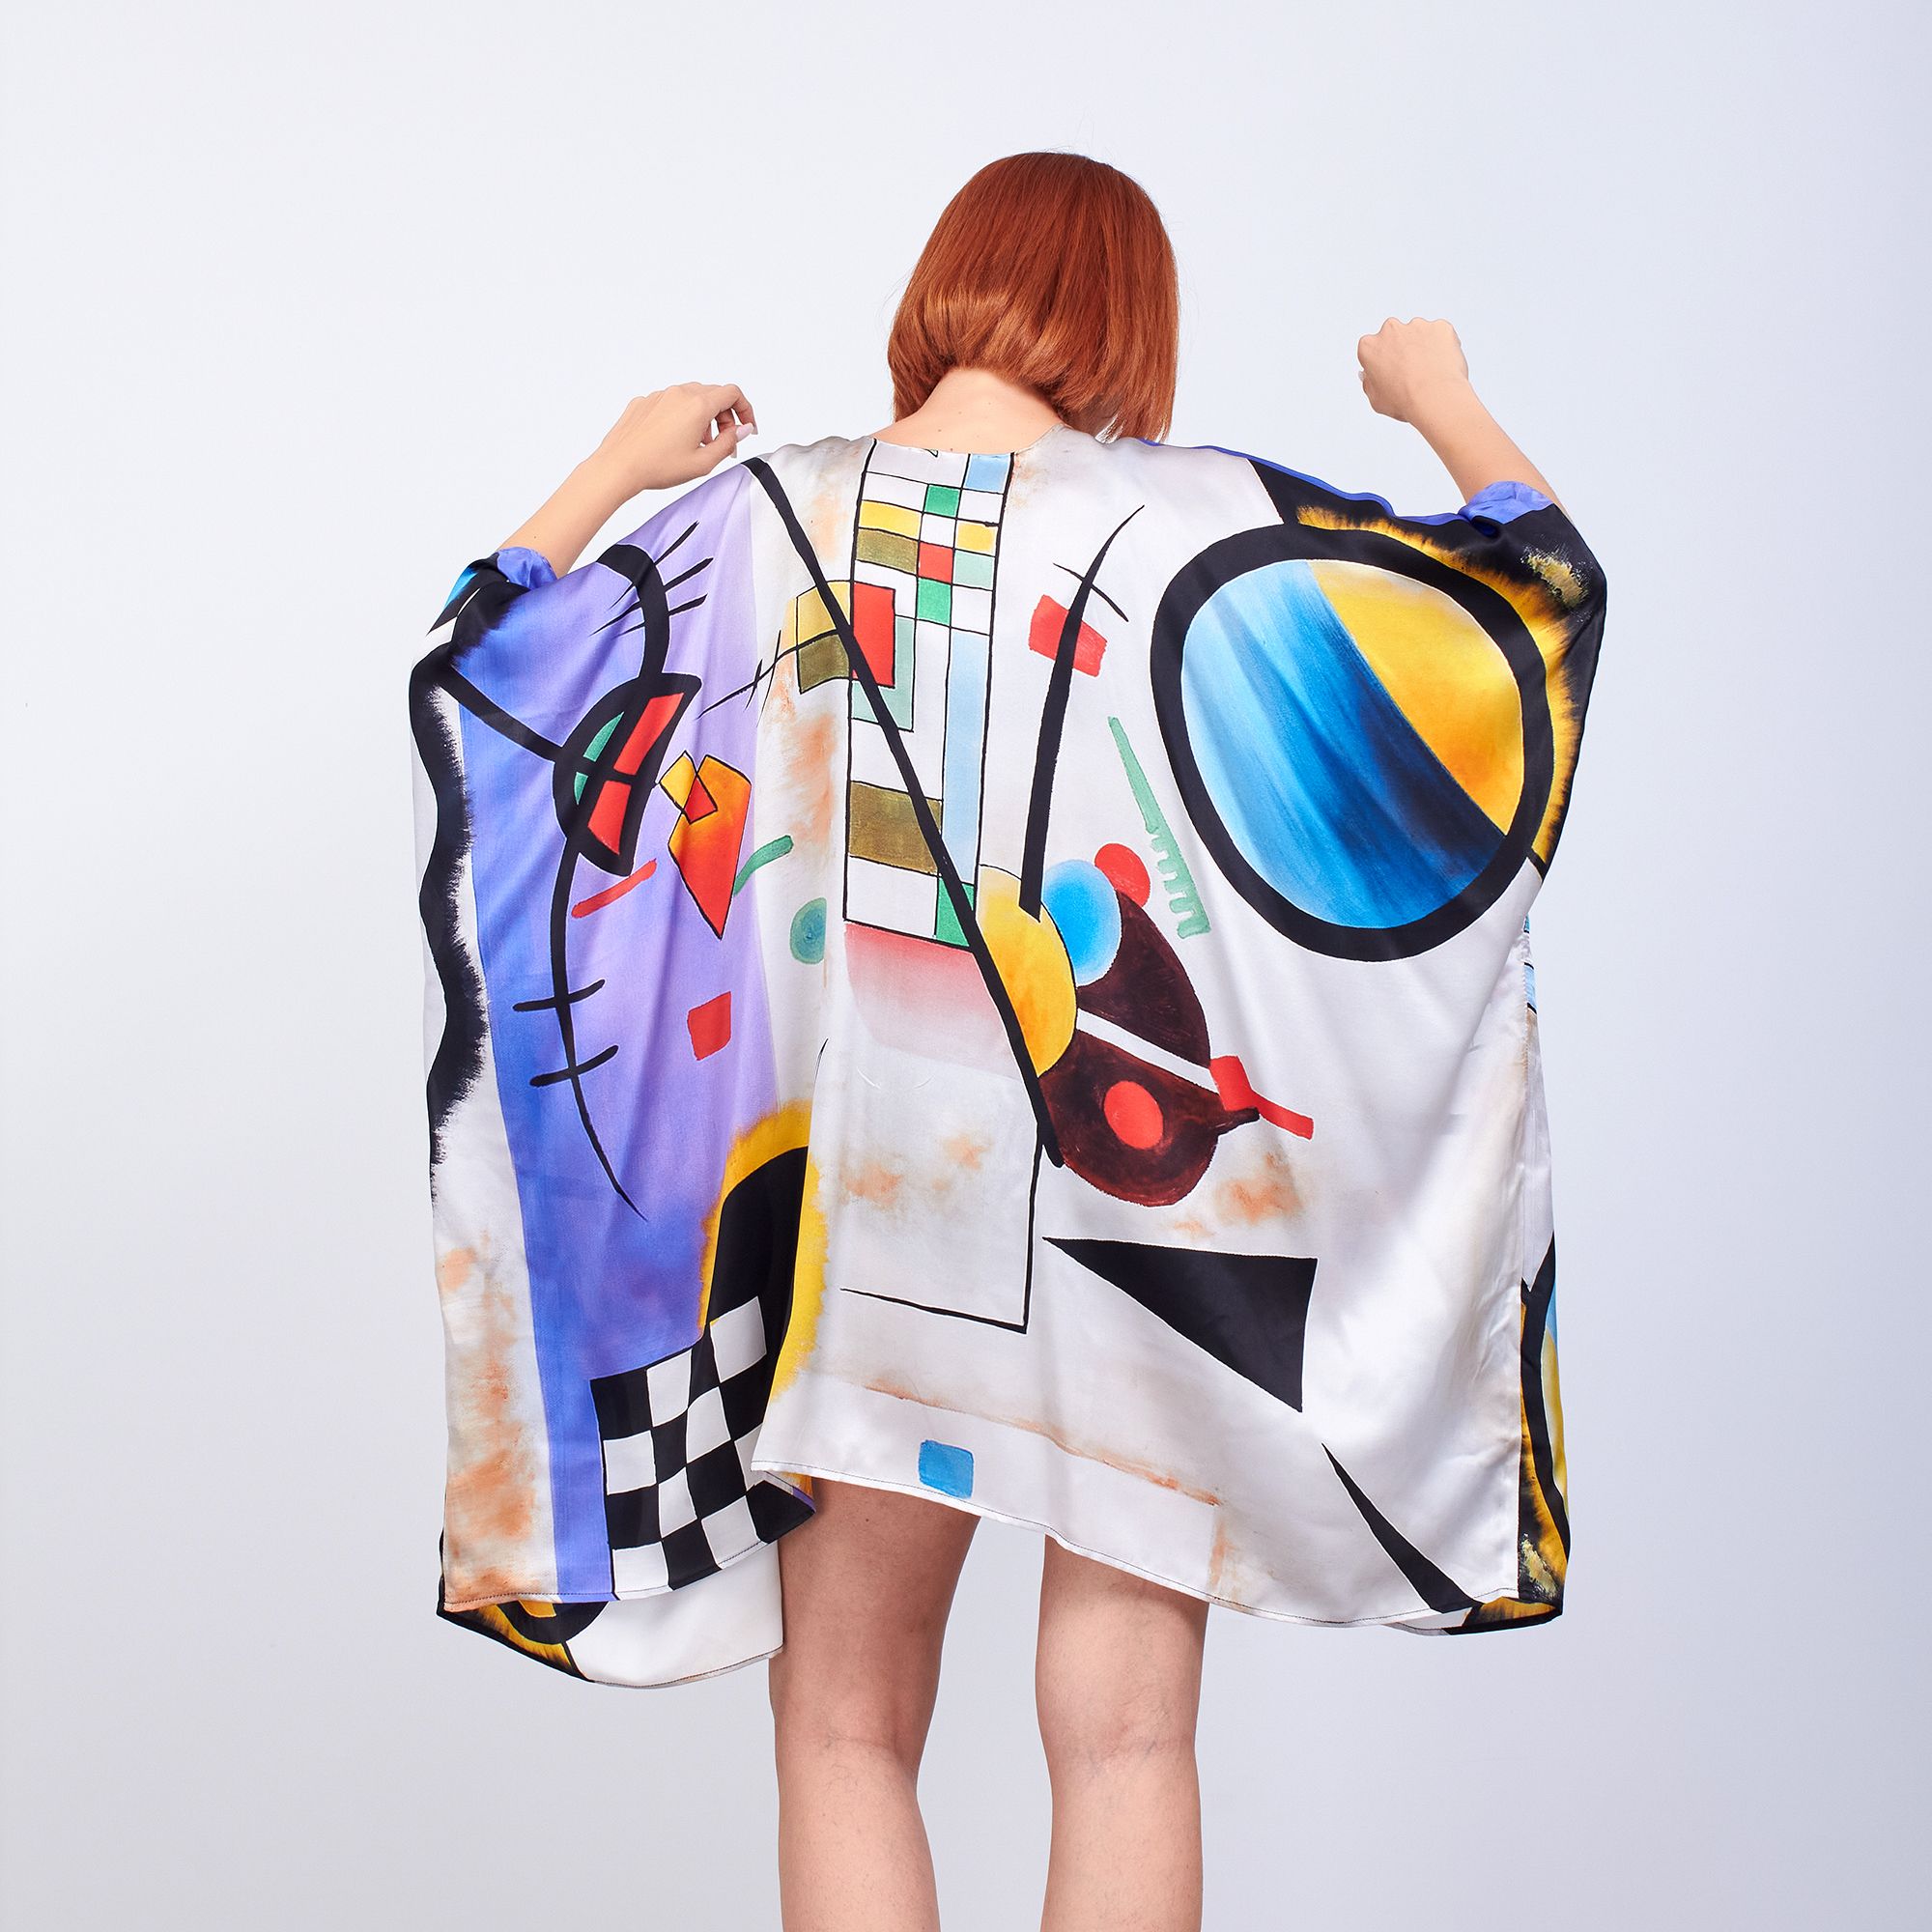 ألبسة كيمونو حريري ١٠٠٪؜ قصير "وشاح للشاطئ" | Kandinsky Collective